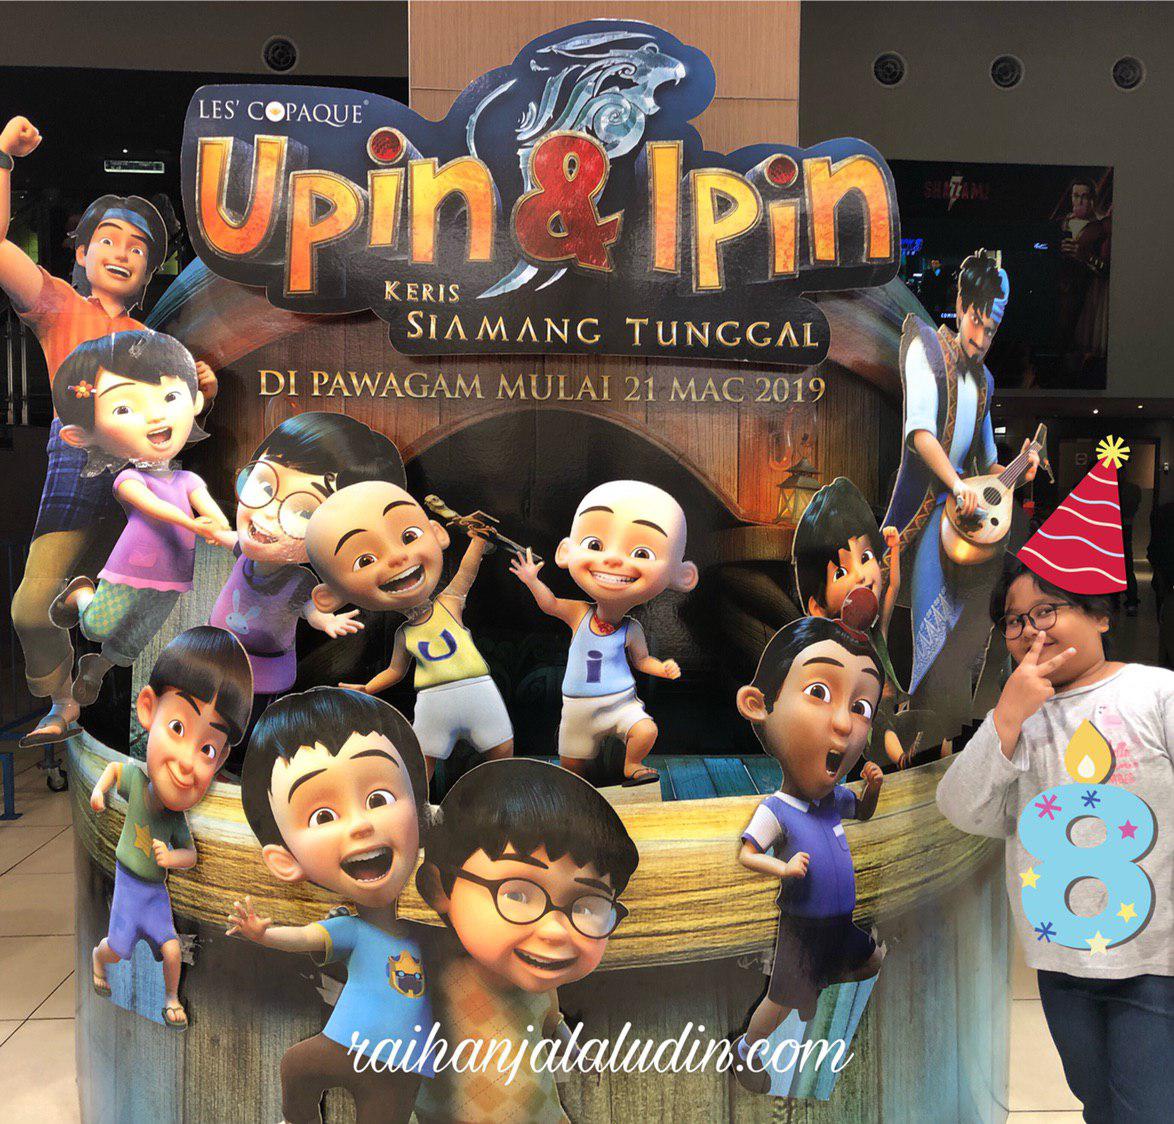 Review : Upin Ipin : Keris Siamang Tunggal & Wonder Park 